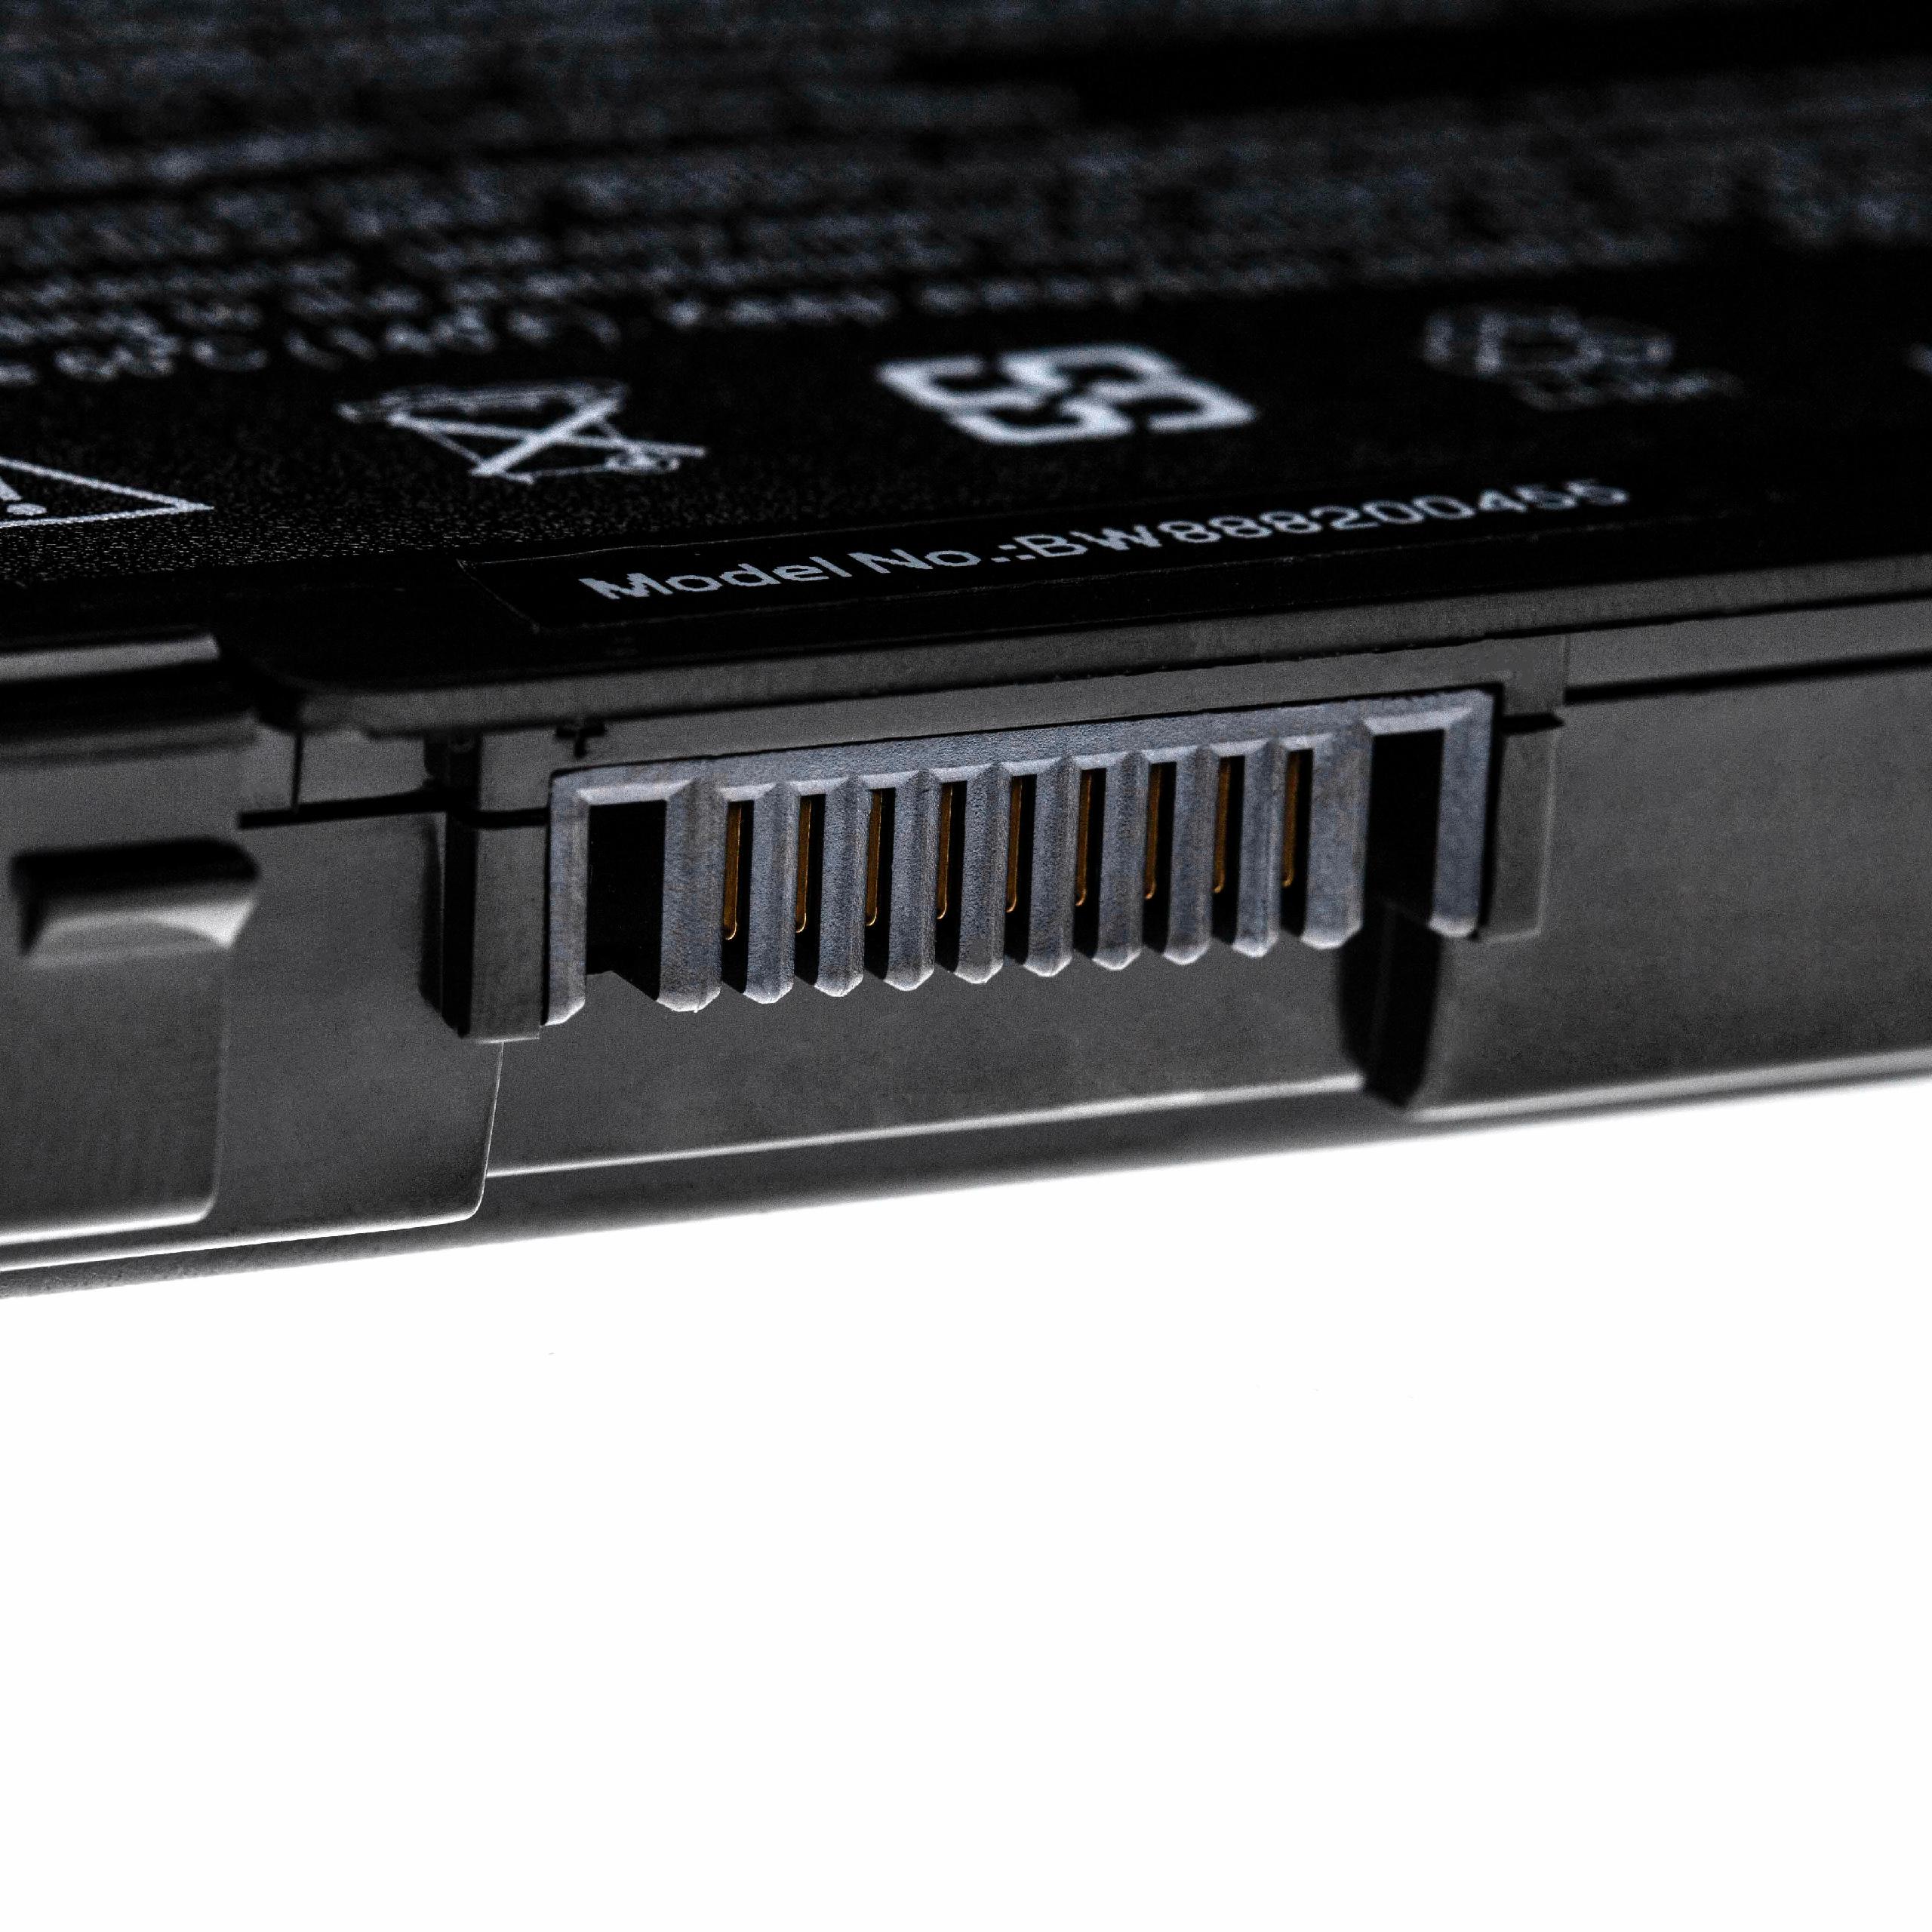 Akumulator do laptopa zamiennik Asus 07G016AQ1875, 07G016AP1875, 07G016761875 - 5200 mAh 11,1 V LiPo, czarny